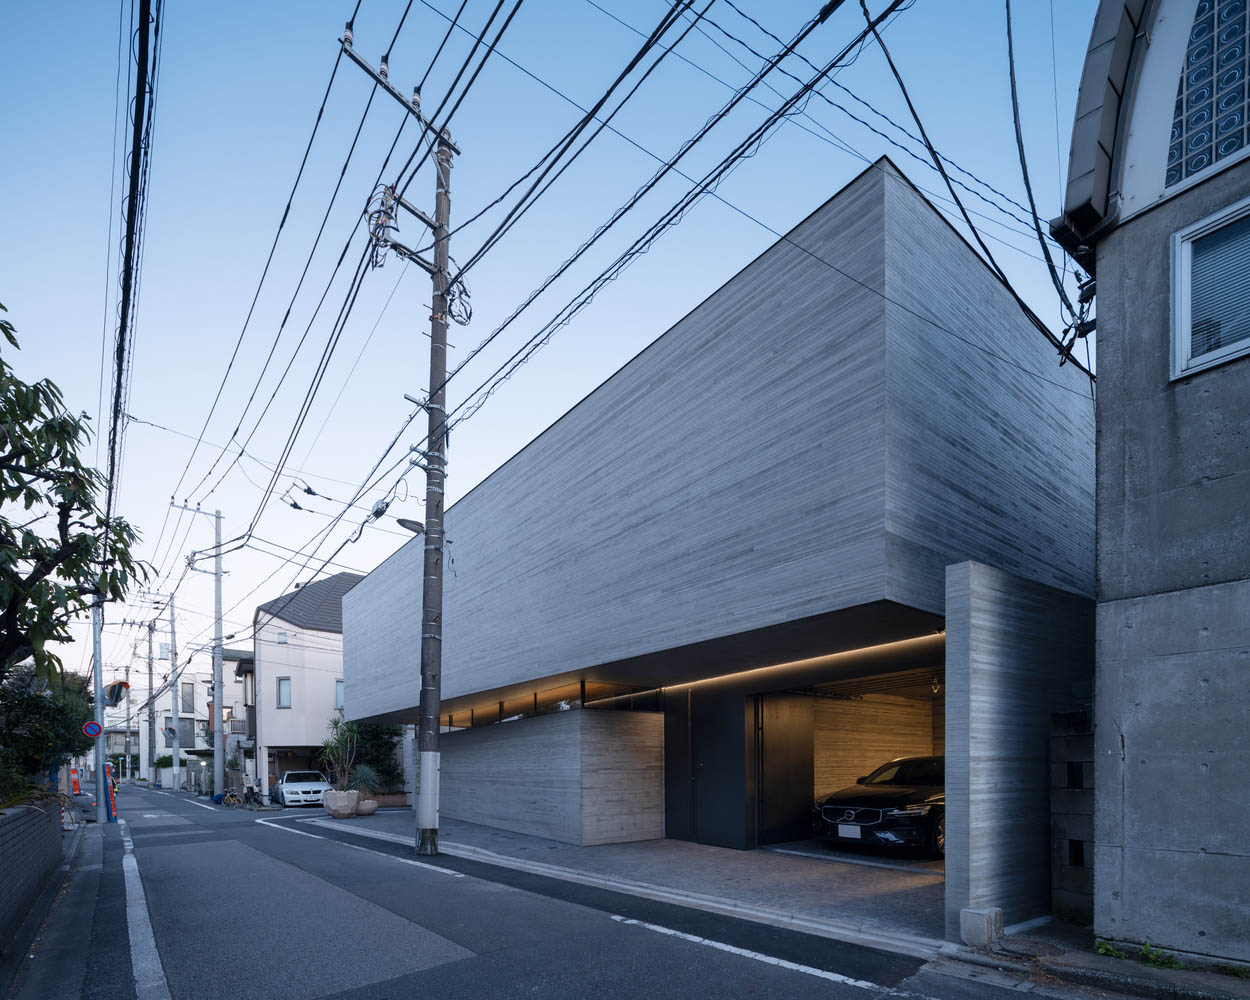 住宅設計,200㎡庭院住宅,APOLLO Architects & Associates,APOLLO,東京住宅設計,國外住宅設計案例